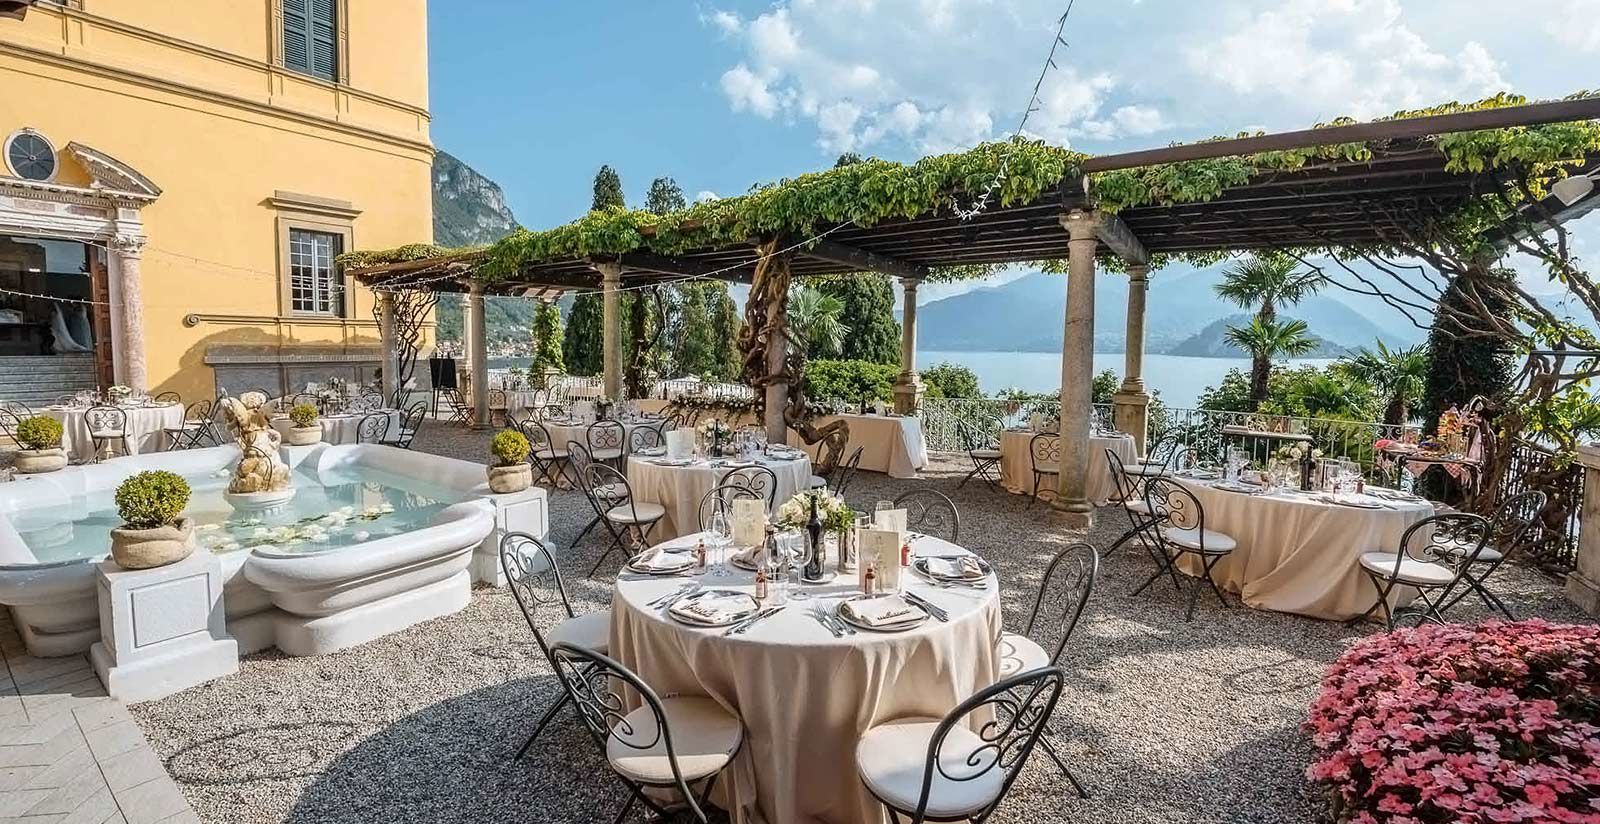 Hotel Villa Cipressi - Location per feste private Varenna 4